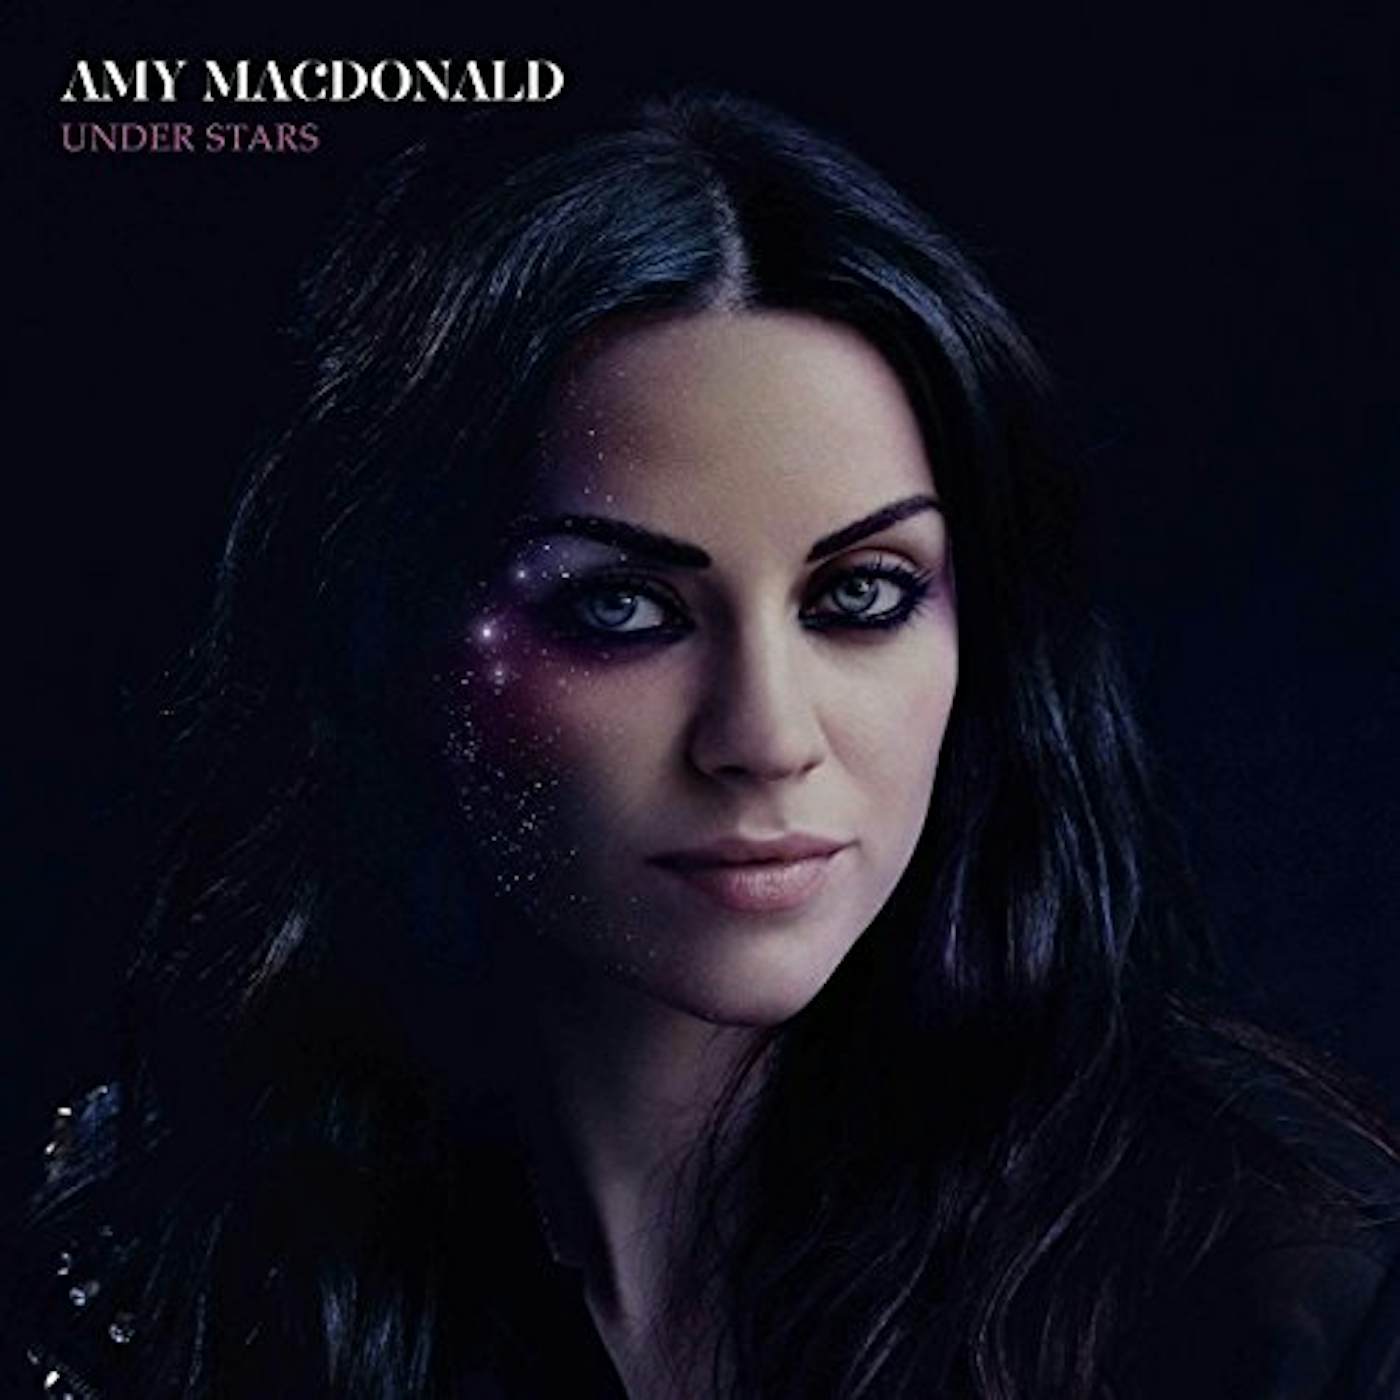 Amy Macdonald UNDER STARS (DELUXE) CD